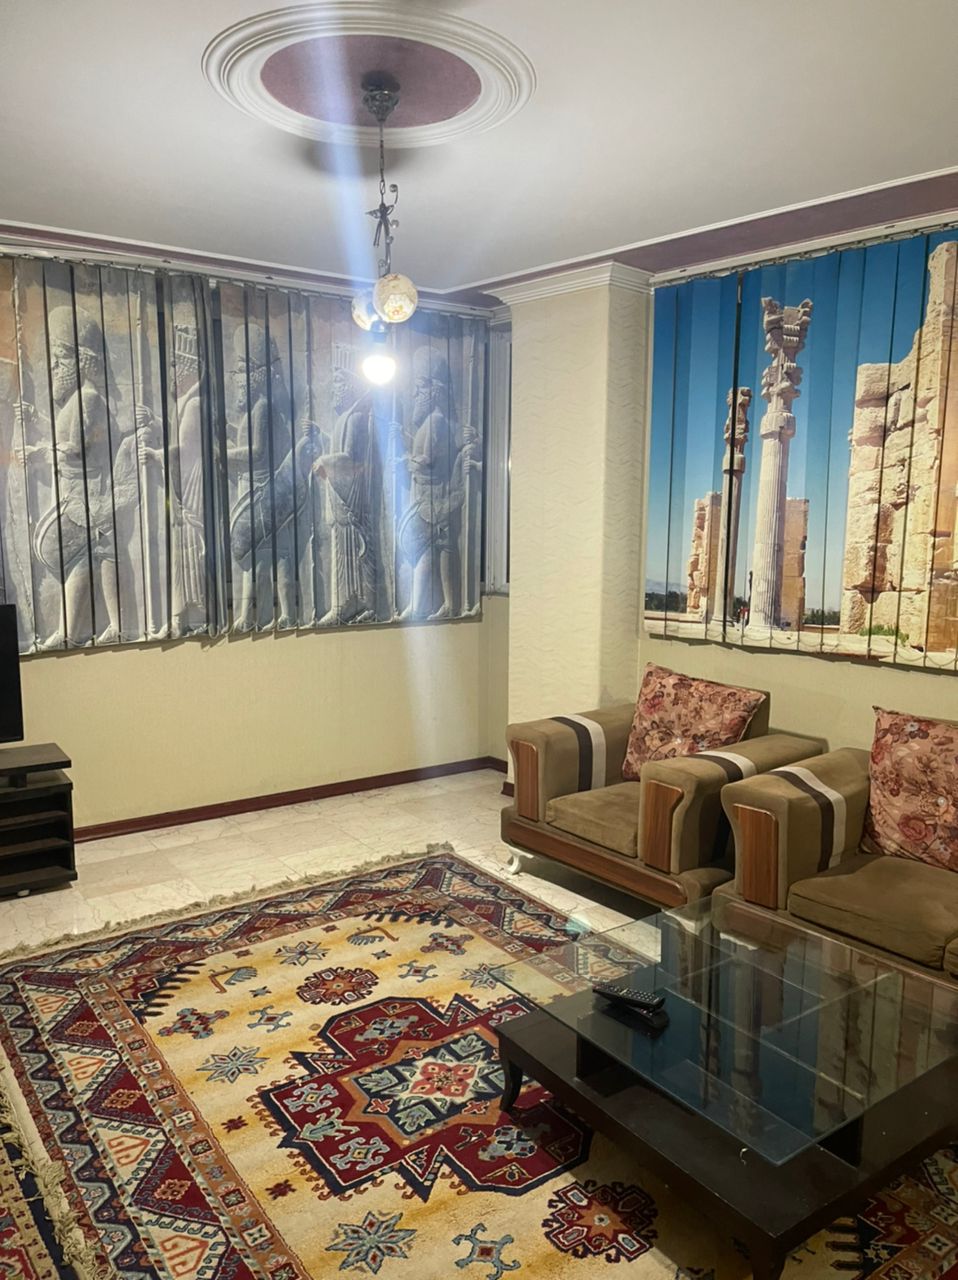 شهری اجاره آپارتمان مبله در میرداماد تهران